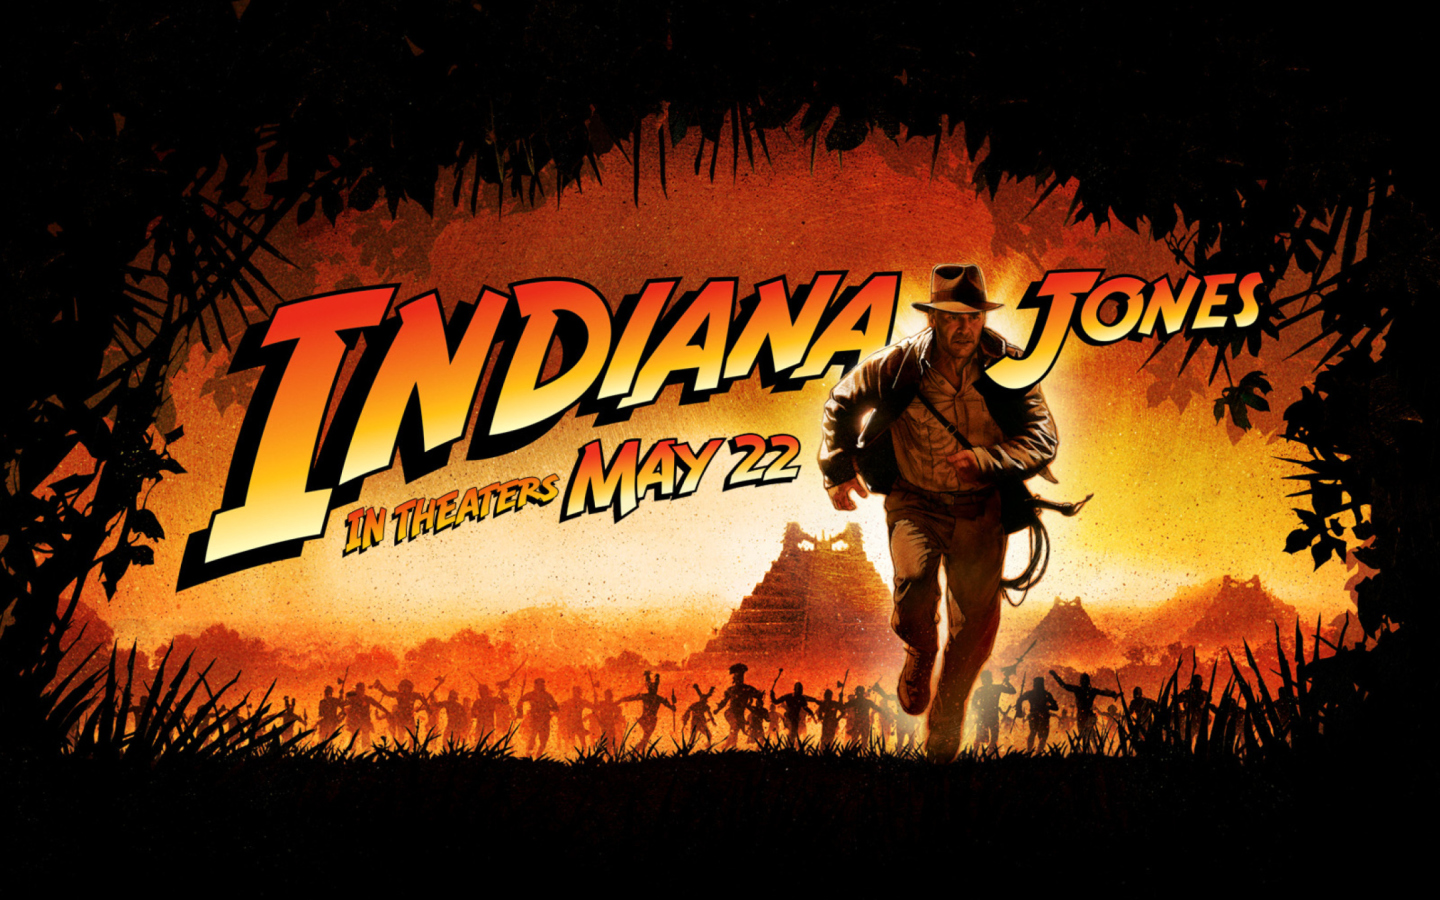 Das Indiana Jones Wallpaper 1440x900